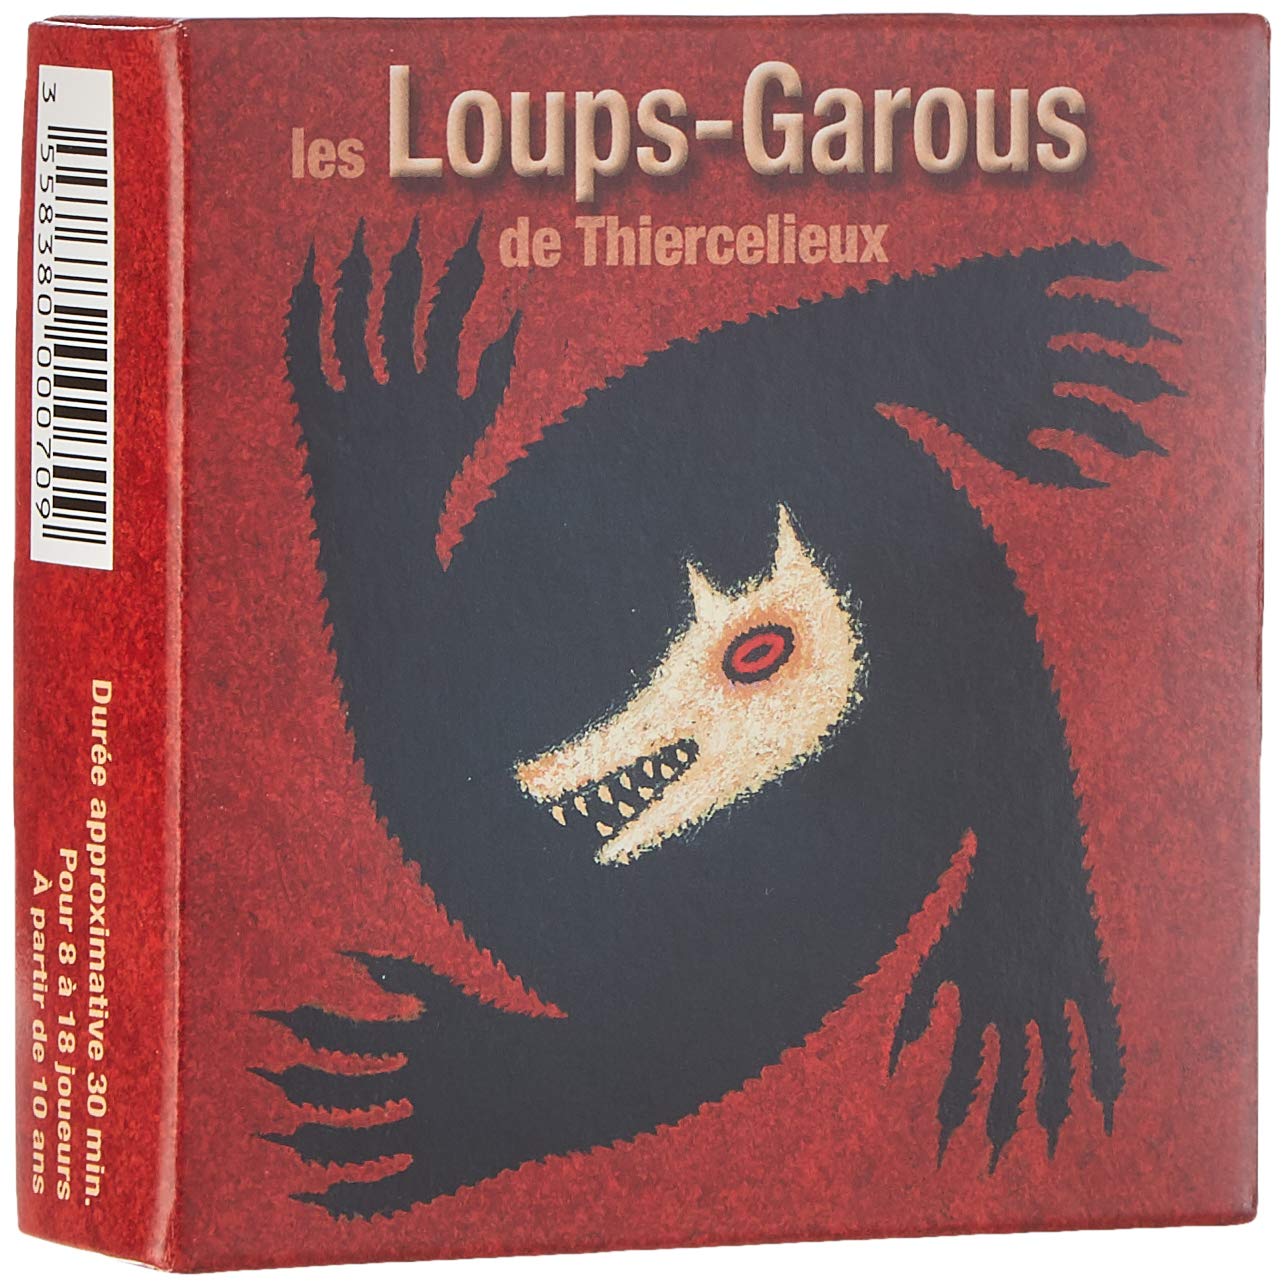 https://monsieur-jouet.com/wp-content/uploads/2019/10/Les-Loups-Garous-de-Thiercelieux-avant.jpg